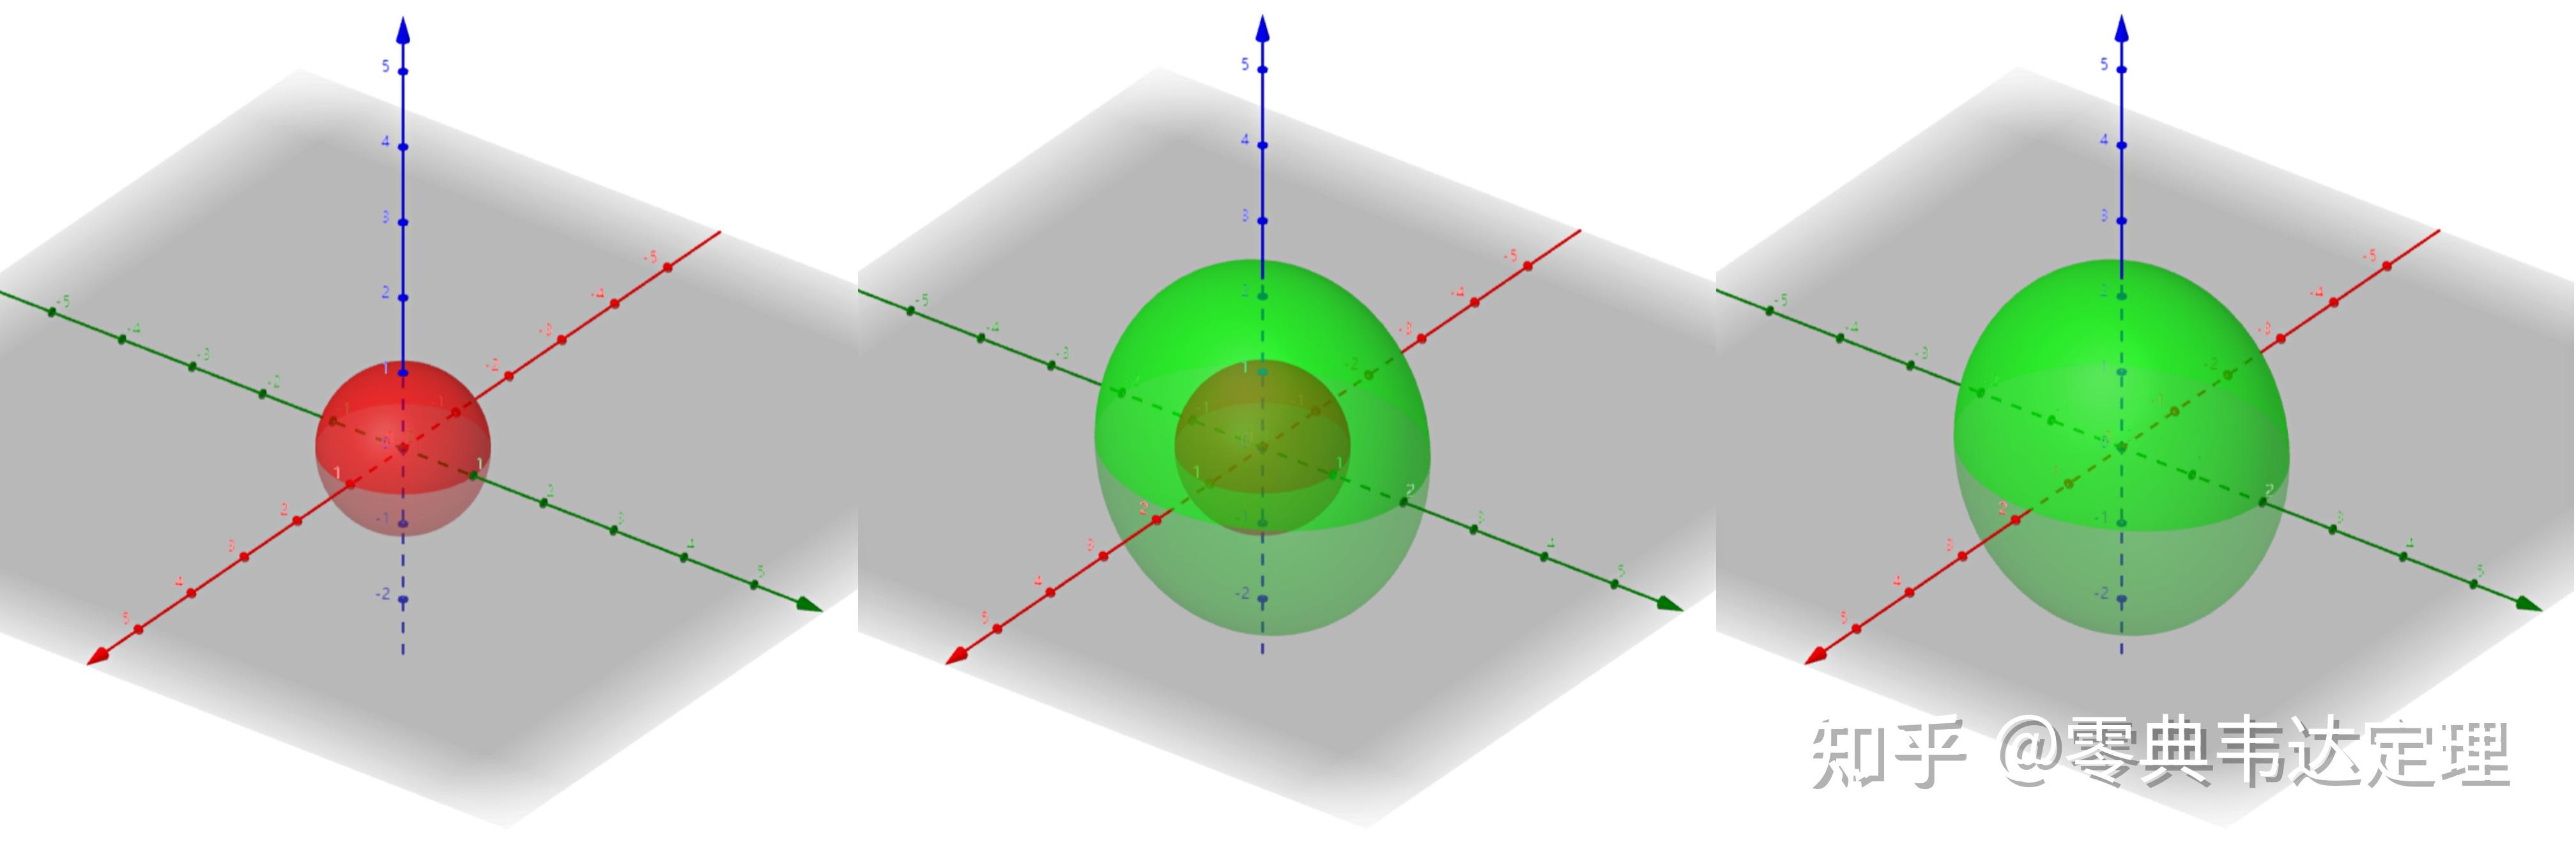 椭圆的画法 工程制图椭圆画法步骤_华夏智能网